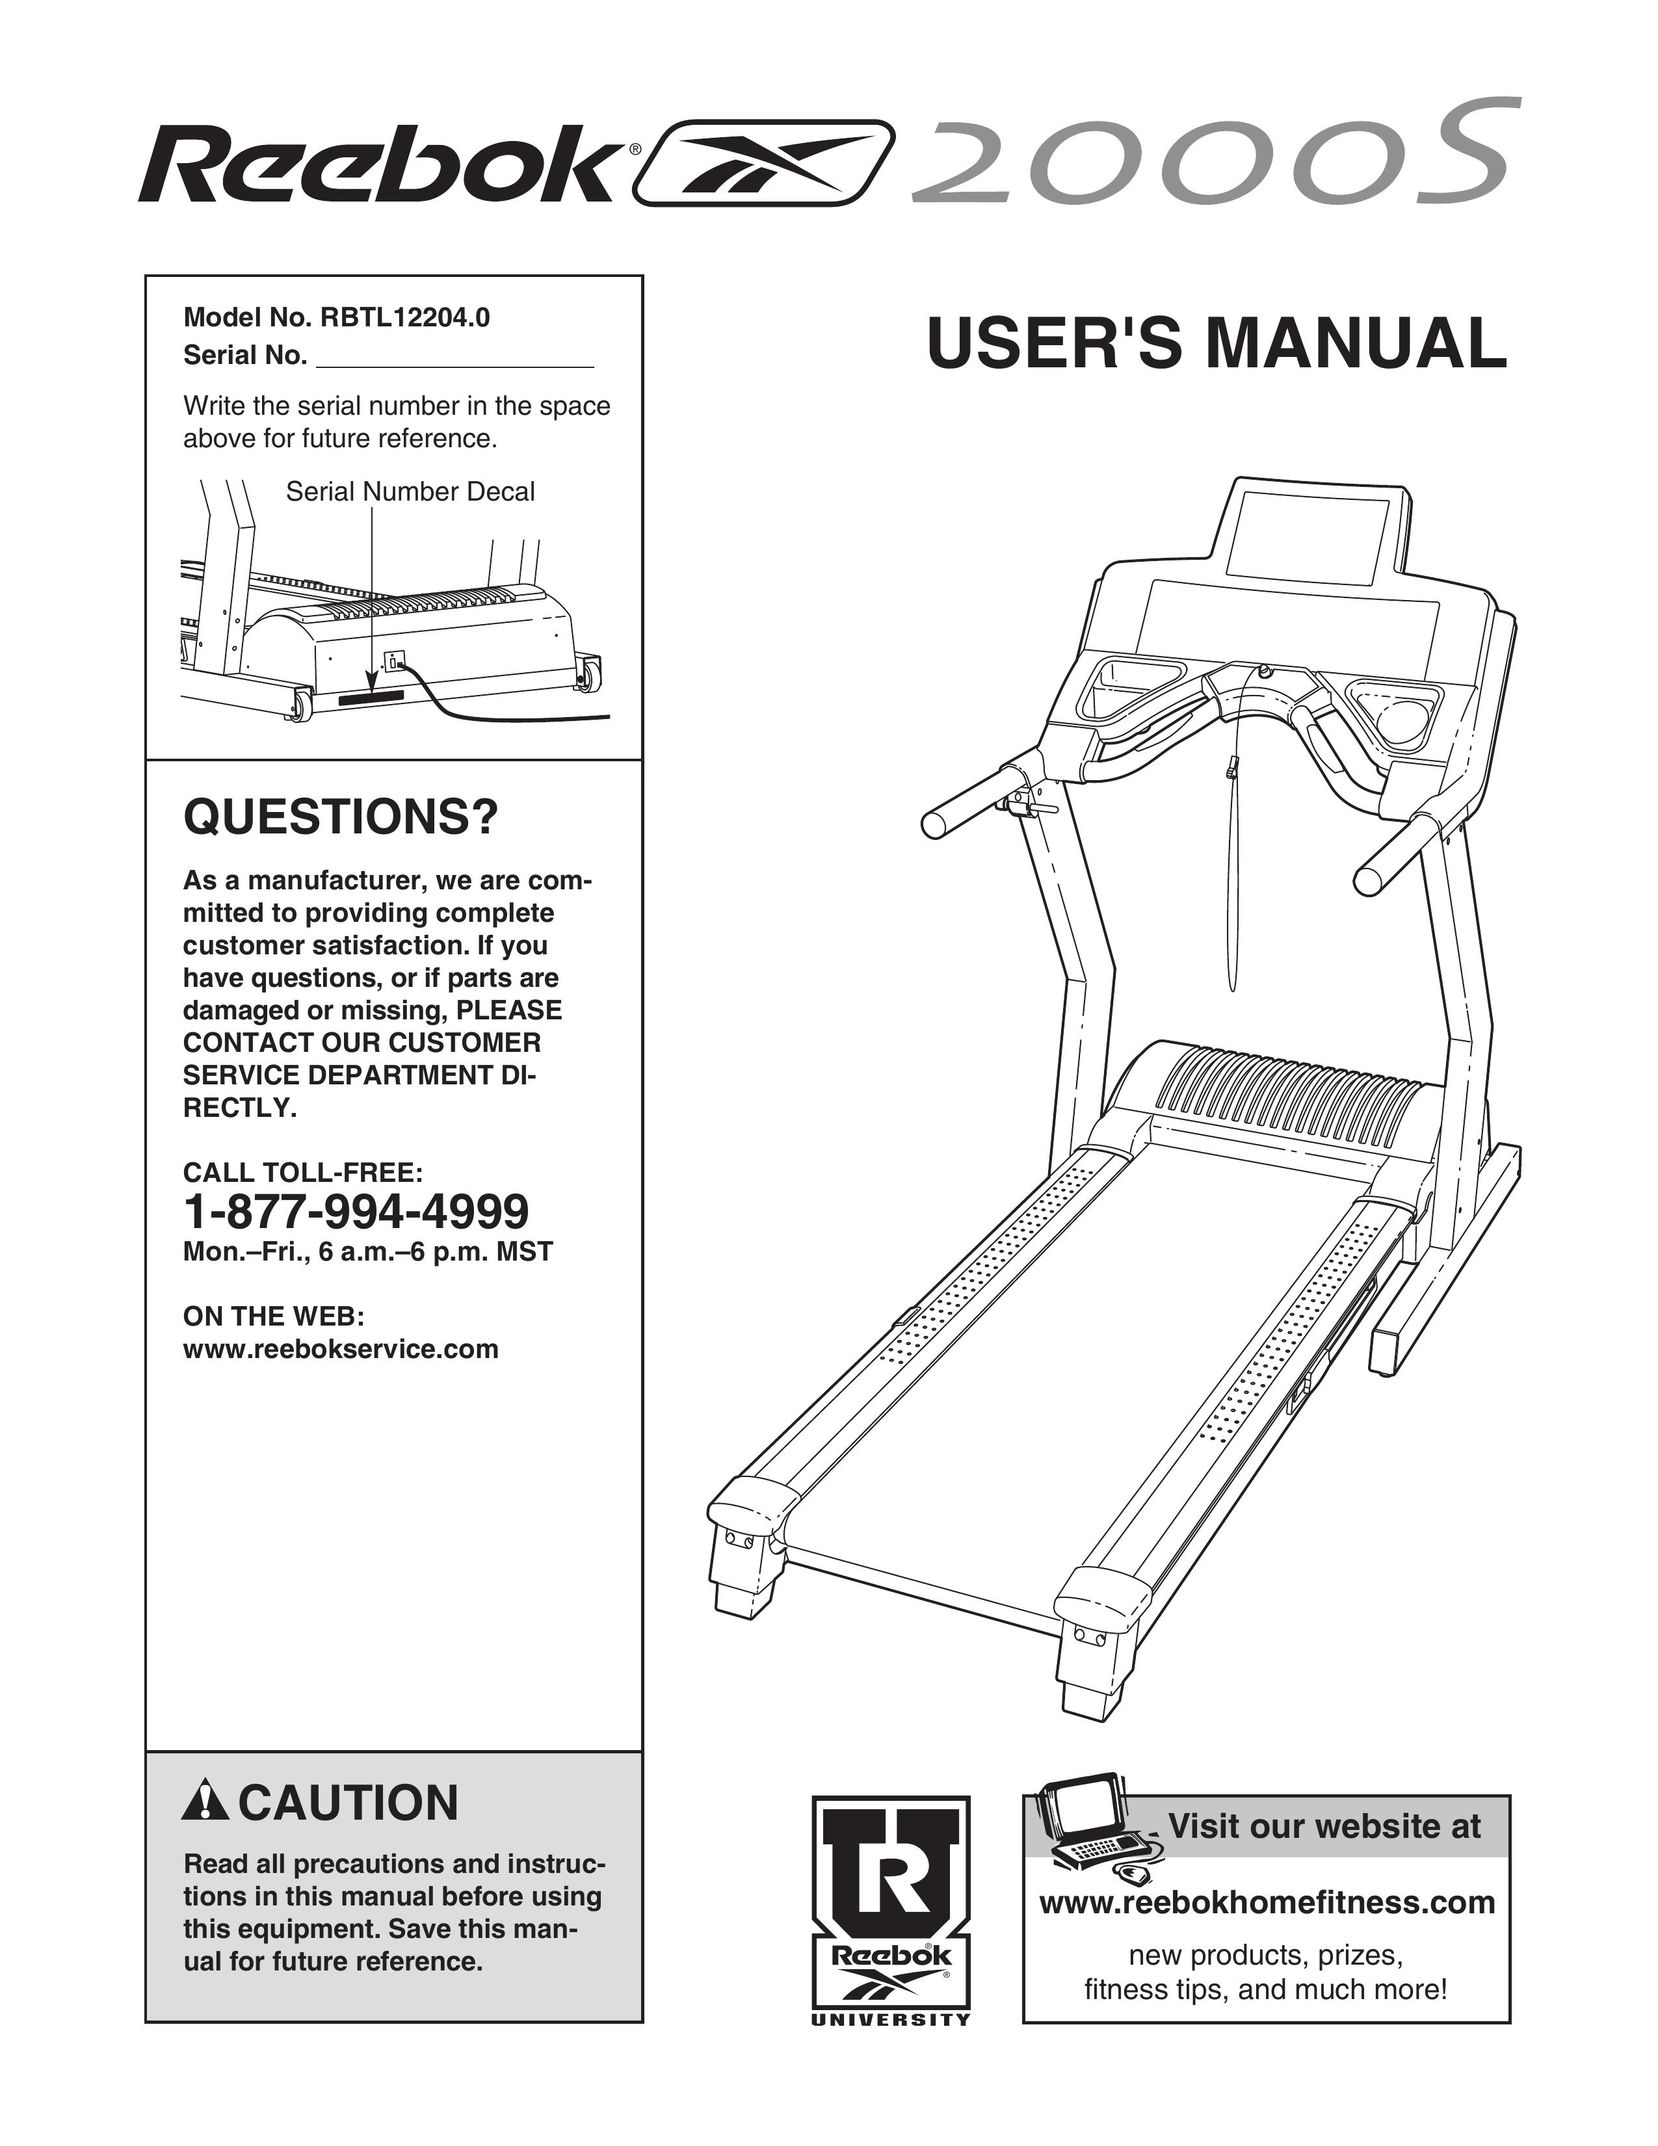 Reebok Fitness RBTL12204.0 Treadmill User Manual